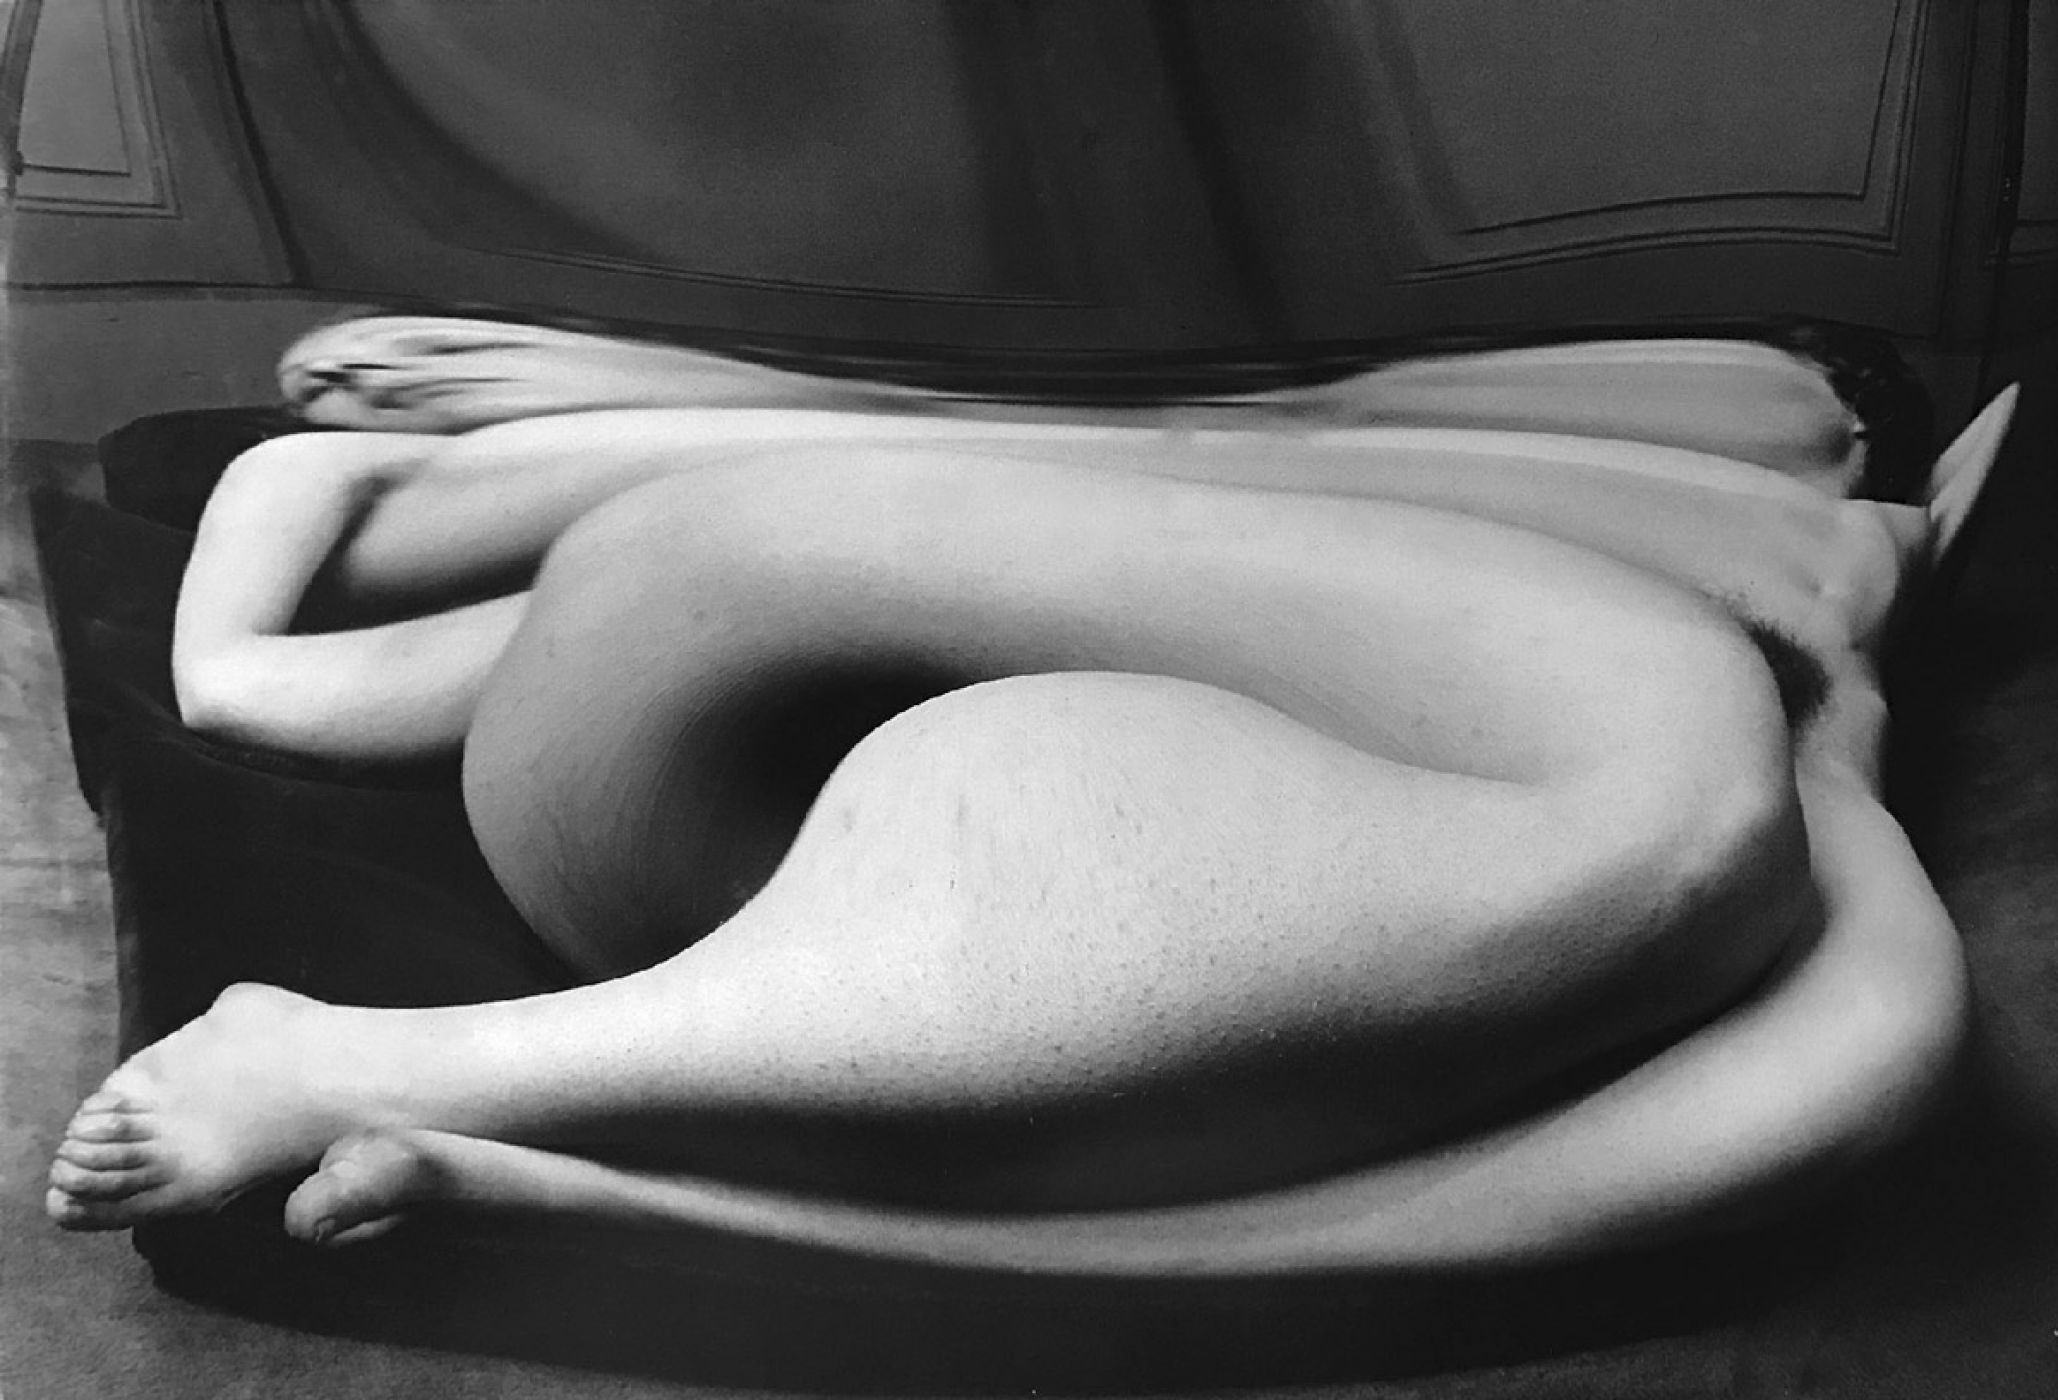 André Kertész, “Distortion #34, Paris”, 1933